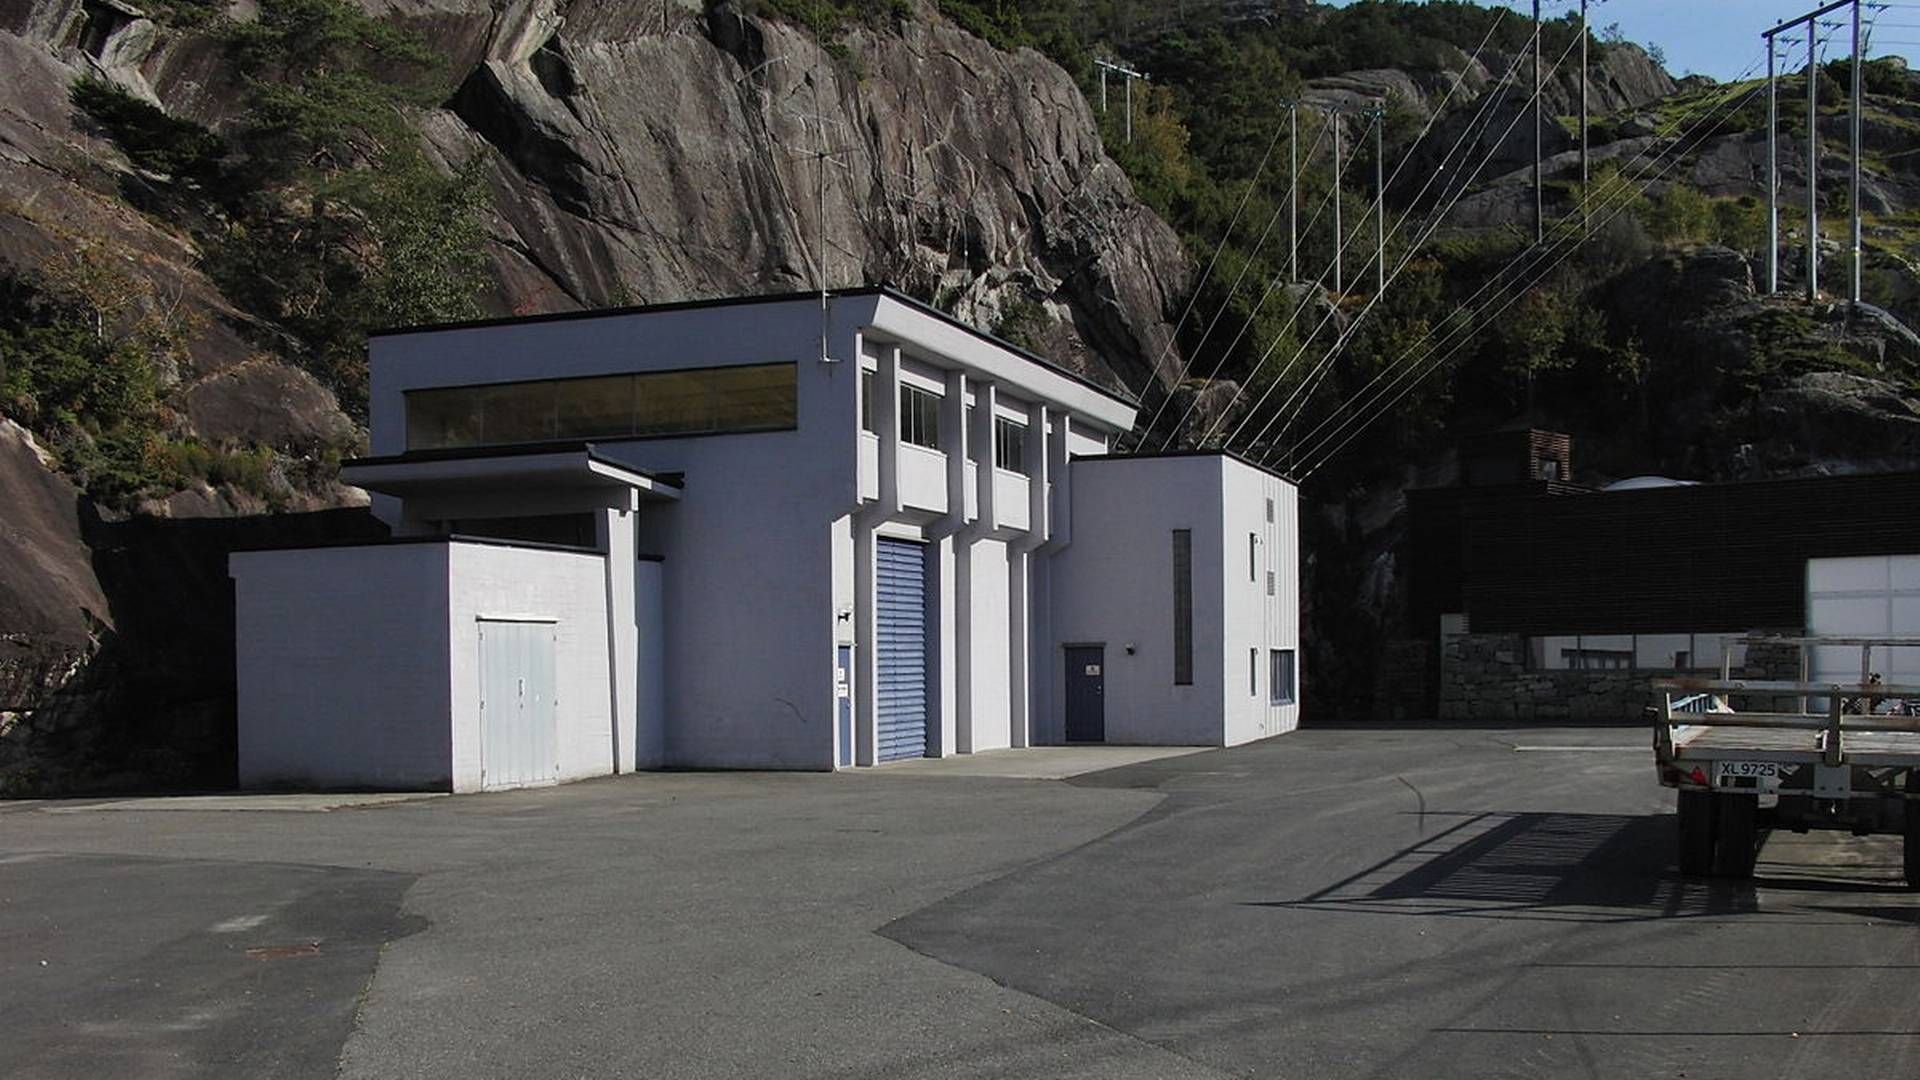 KREVER REVISJON: Øygreyfoss kraftverk på Slettebø ved Egersund fikk konsesjon i 1930. Nå krever Dalane Vannområde at konsesjonen revideres, og at det implementeres tiltak av hensyn til fisken. | Foto: Dalane Kraft